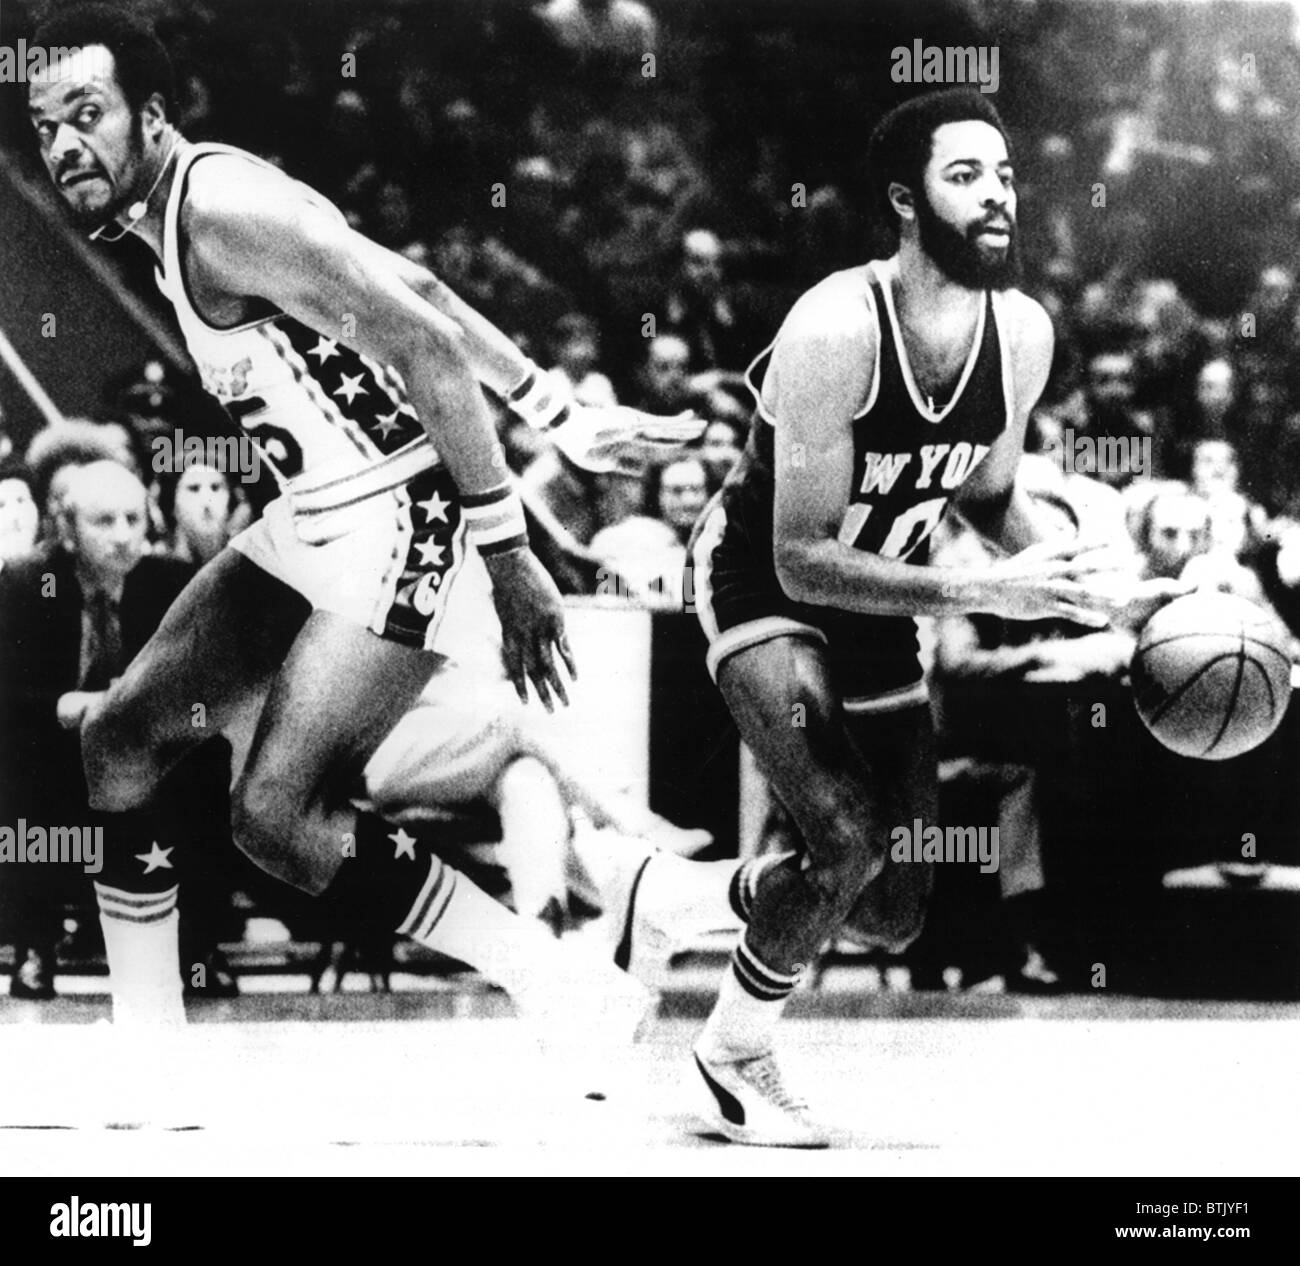 Sixers de Philadelphie' Bob Article (L), & NY Knicks' Walt Frazier (R), avec le basket-ball, dans leur jeu de Philadelphie, PA, le 7 janvier 19 Banque D'Images